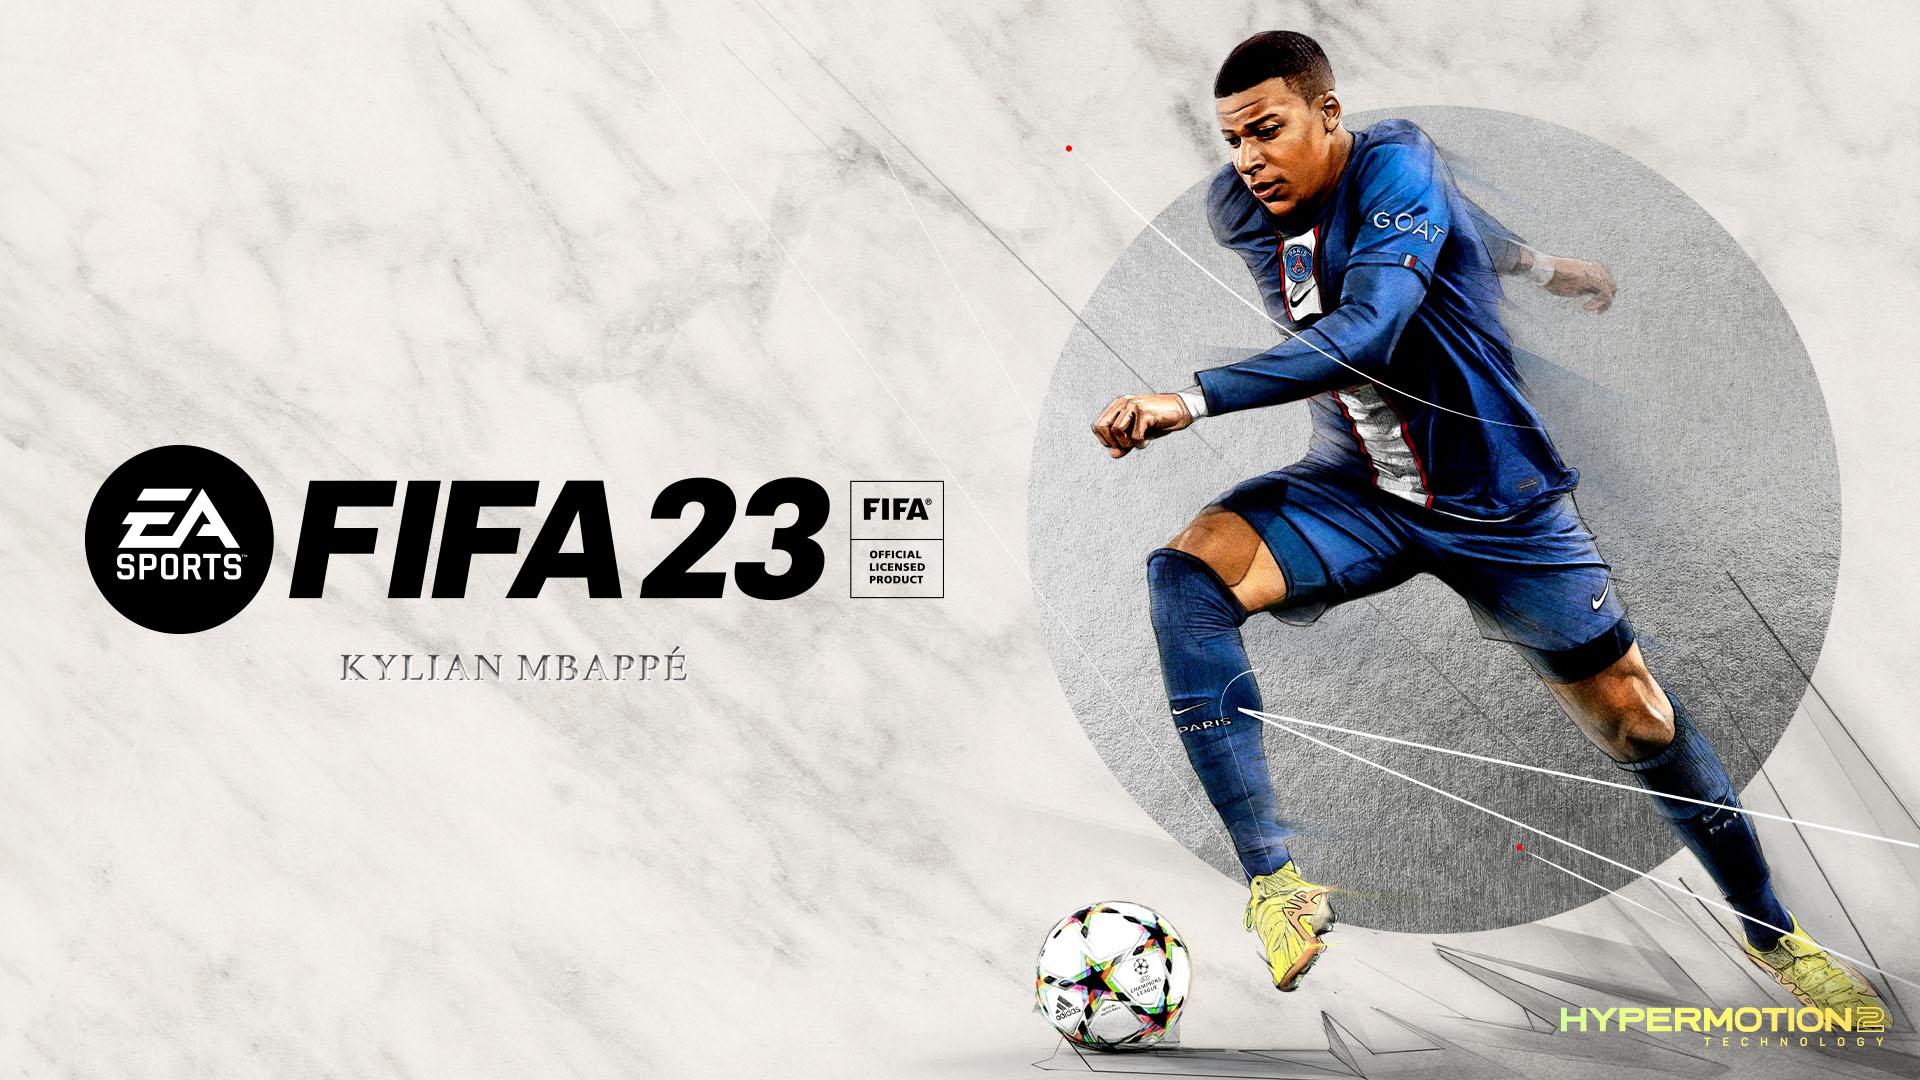 پخش تریلر جدید بازی FIFA 23 با تمرکز روی Pro Clubs